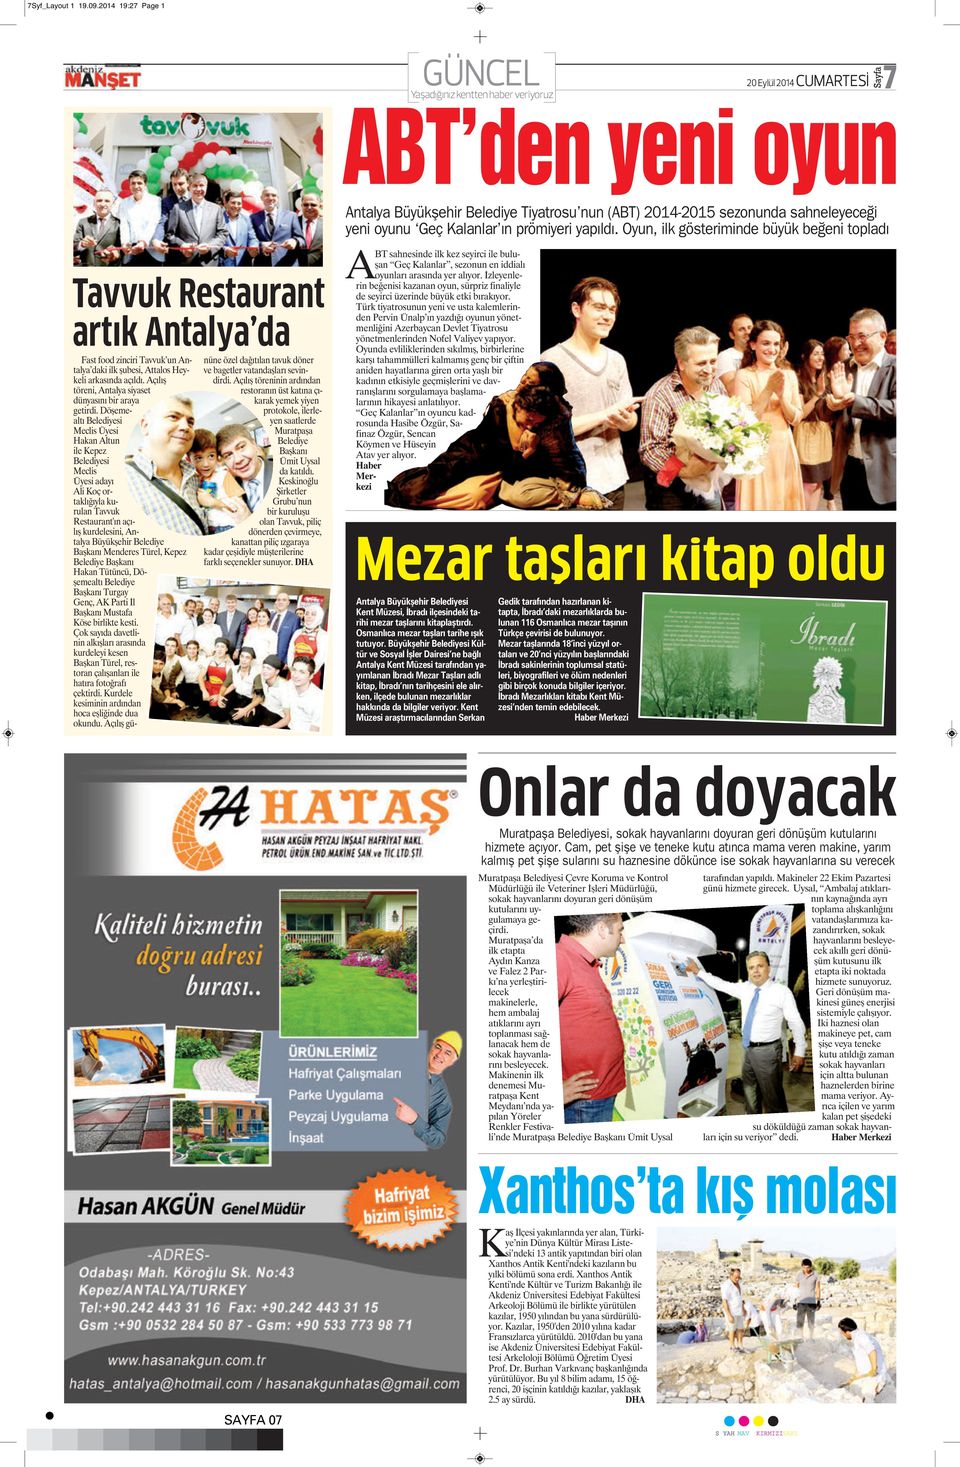 Oyun, ilk gösteriminde büyük beğeni topladı Tavvuk Restaurant artık Antalya da Fast food zinciri Tavvuk un Antalya daki ilk şubesi, Attalos Heykeli arkasında açıldı.